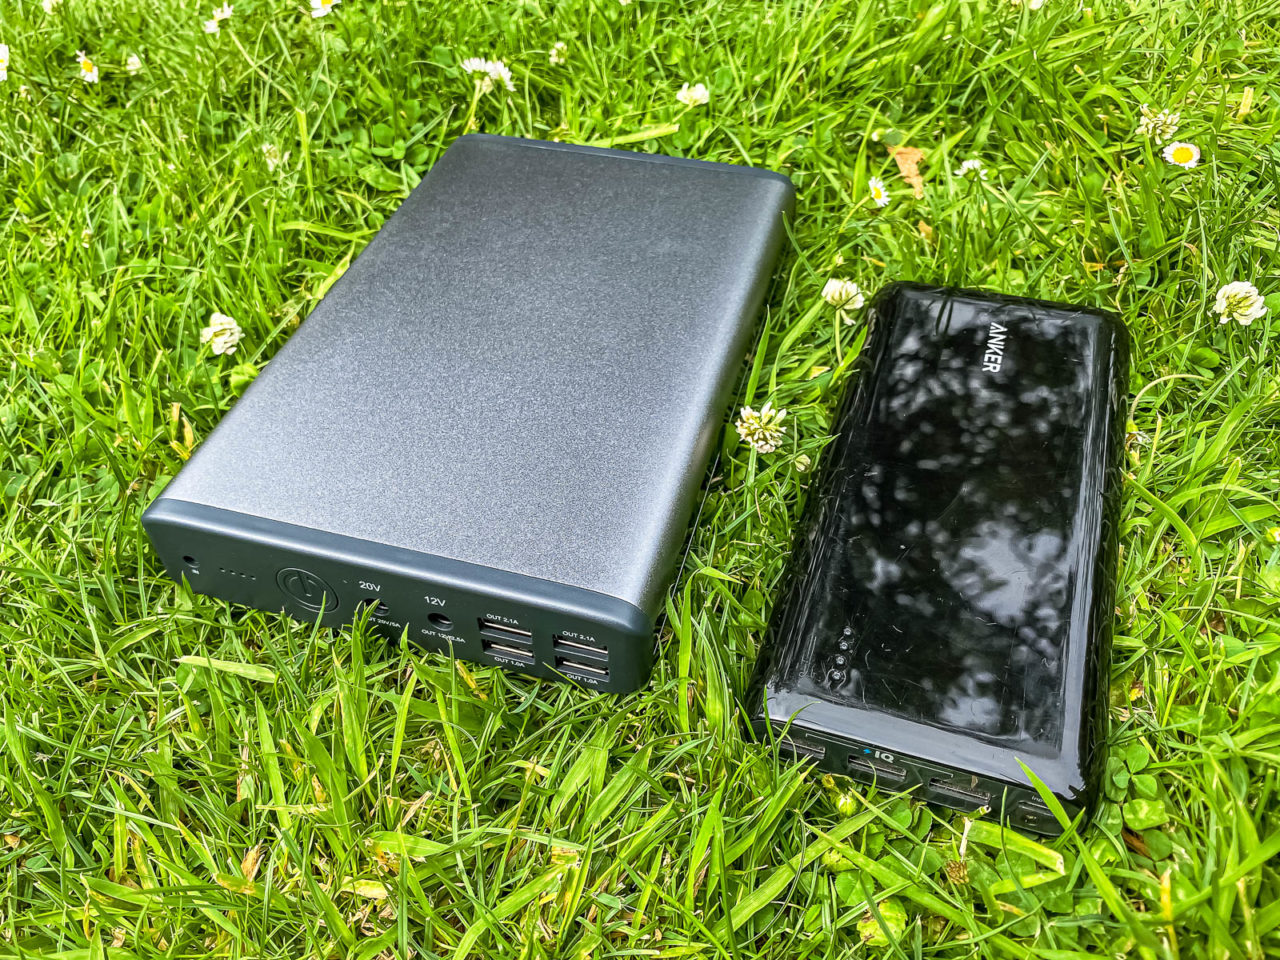 MaxOak K2 Notebook Power Bank Test - Größenvergleich mit Anker Powerbank, liegt im Gras